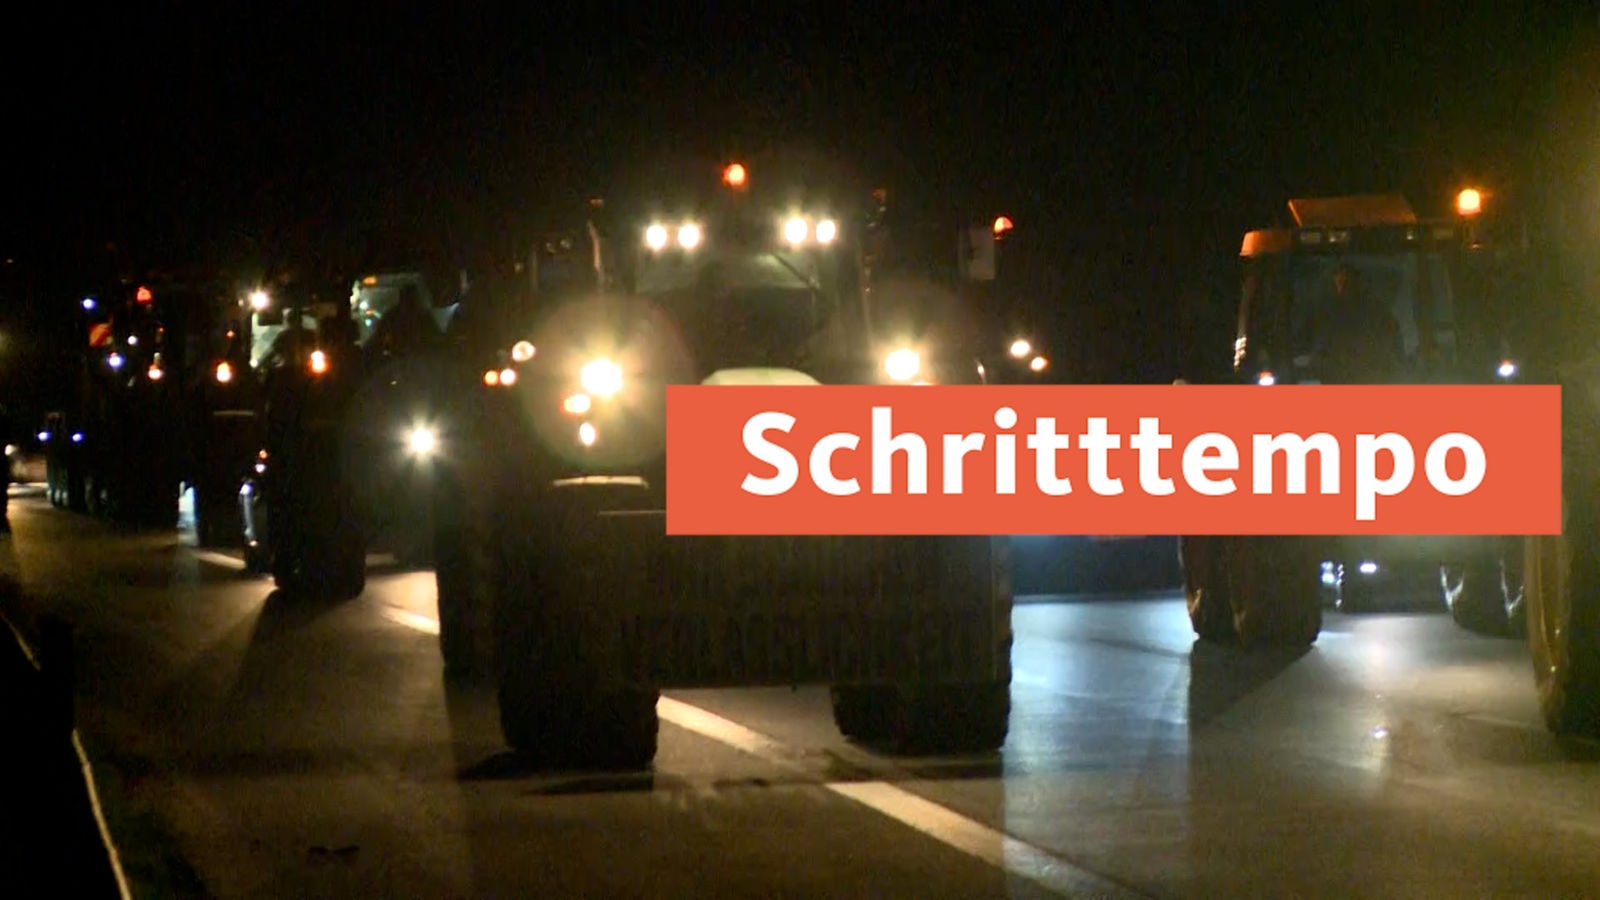 Spór o rolniczy olej napędowy: Rolnicy blokują autostrady w Nadrenii Północnej-Westfalii – Aktualności – WDR – Aktualności